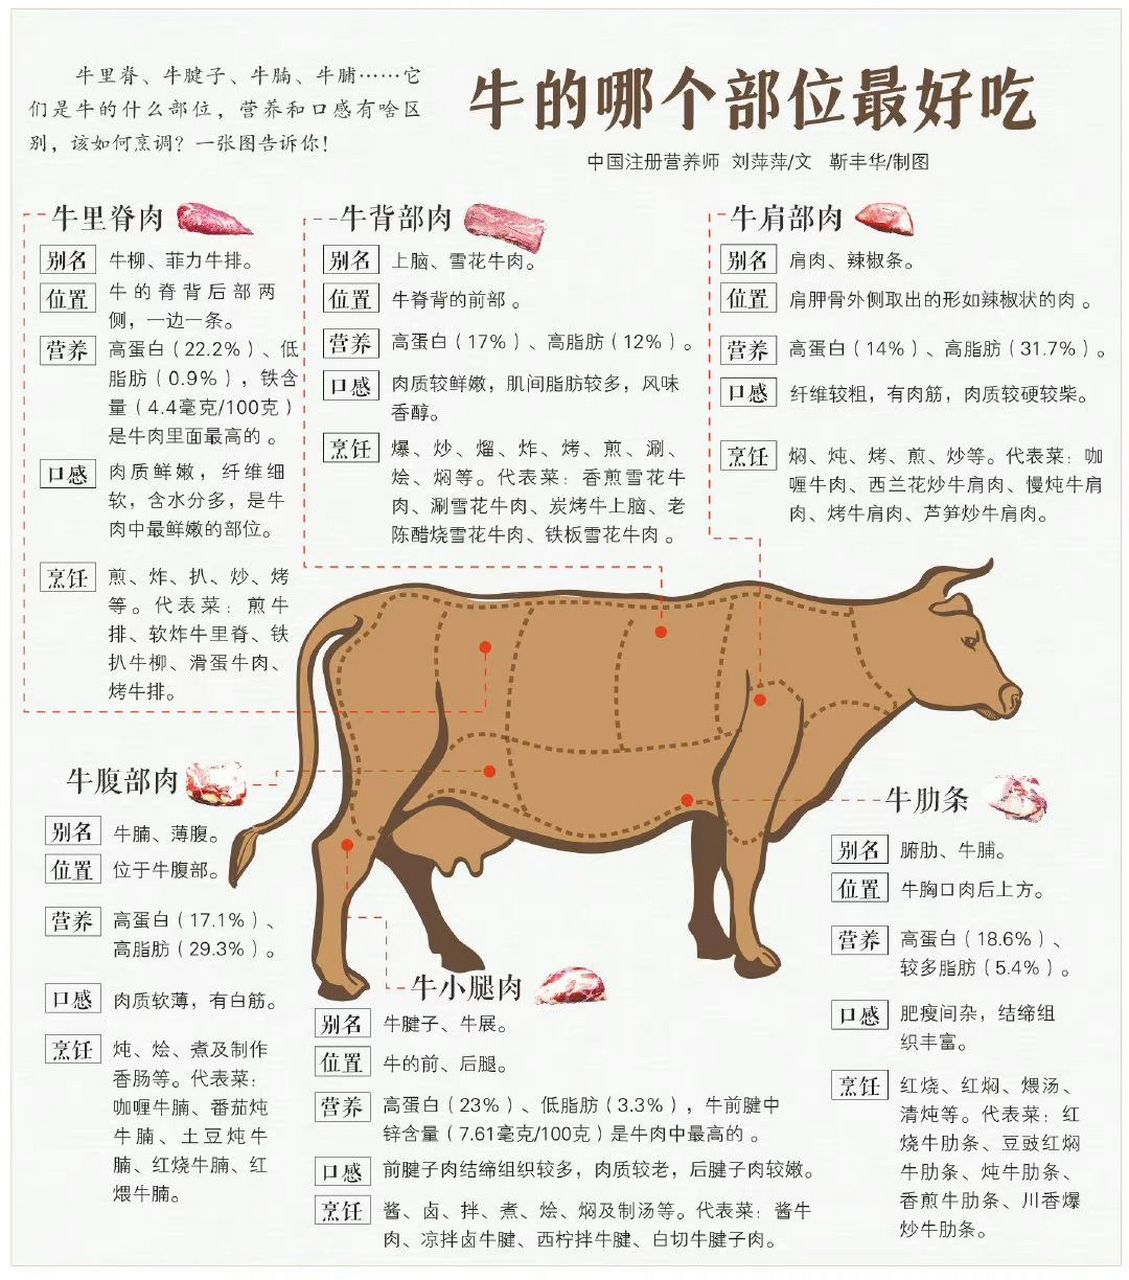 90牛肉哪个部位最好吃71口感有啥区别71 牛肉90营养价值非常